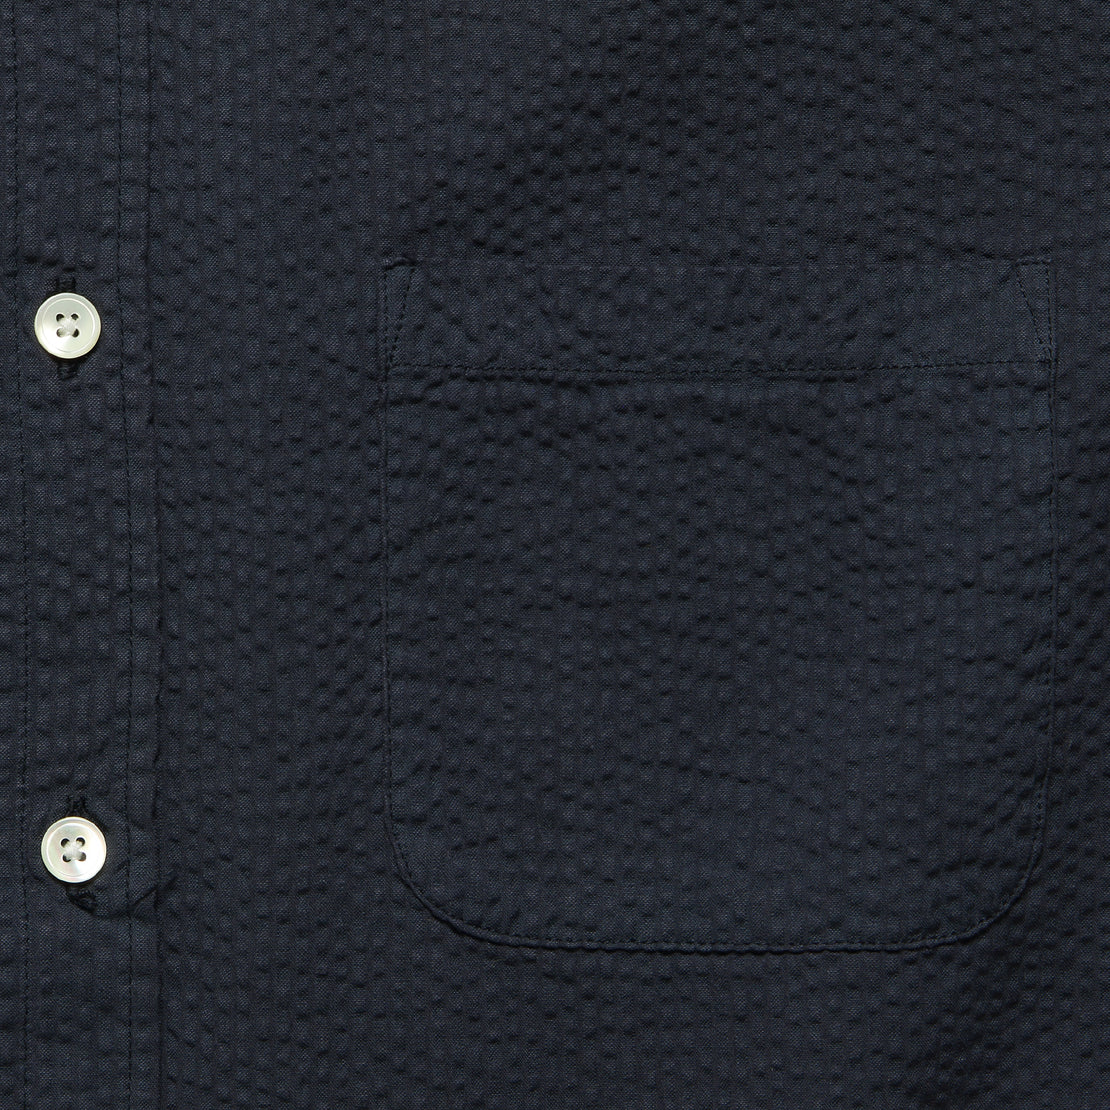 Atlantico Seersucker Shirt - Navy - Portuguese Flannel - STAG Provisions - Tops - S/S Woven - Seersucker